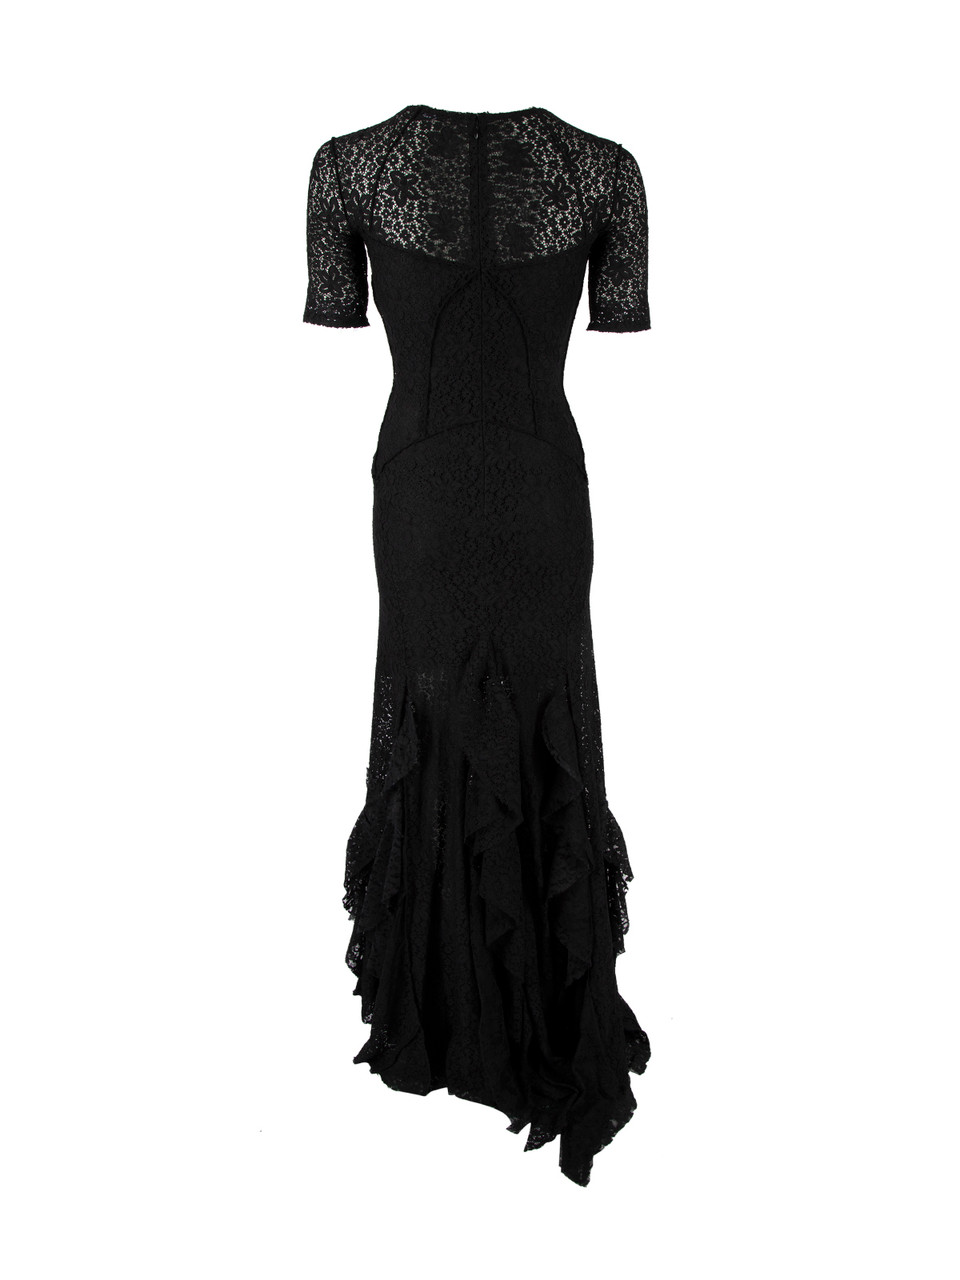 Nina Ricci Black Lace Fishtail Gown